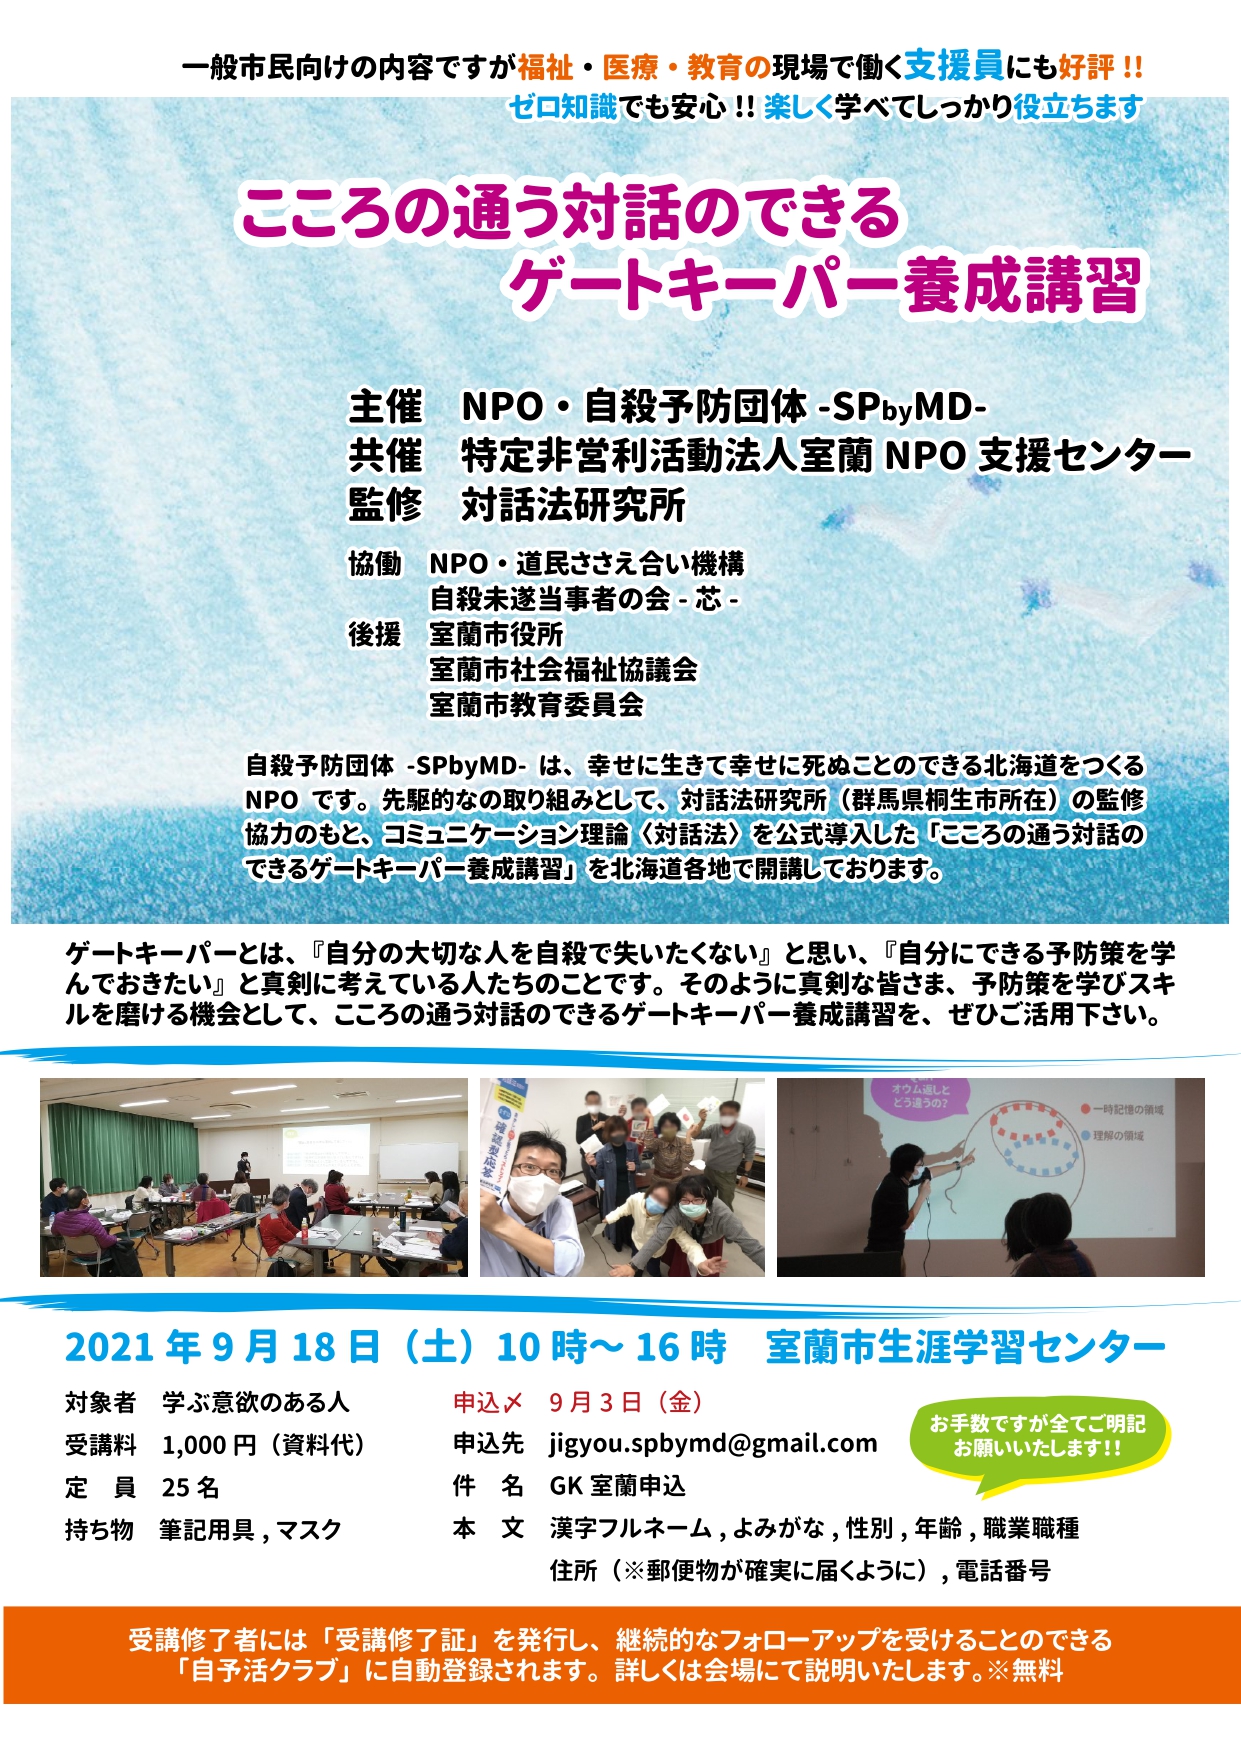 こころの通う対話のできるゲートキーパー養成講習 札幌イベント情報マガジン サツイベ Event Id